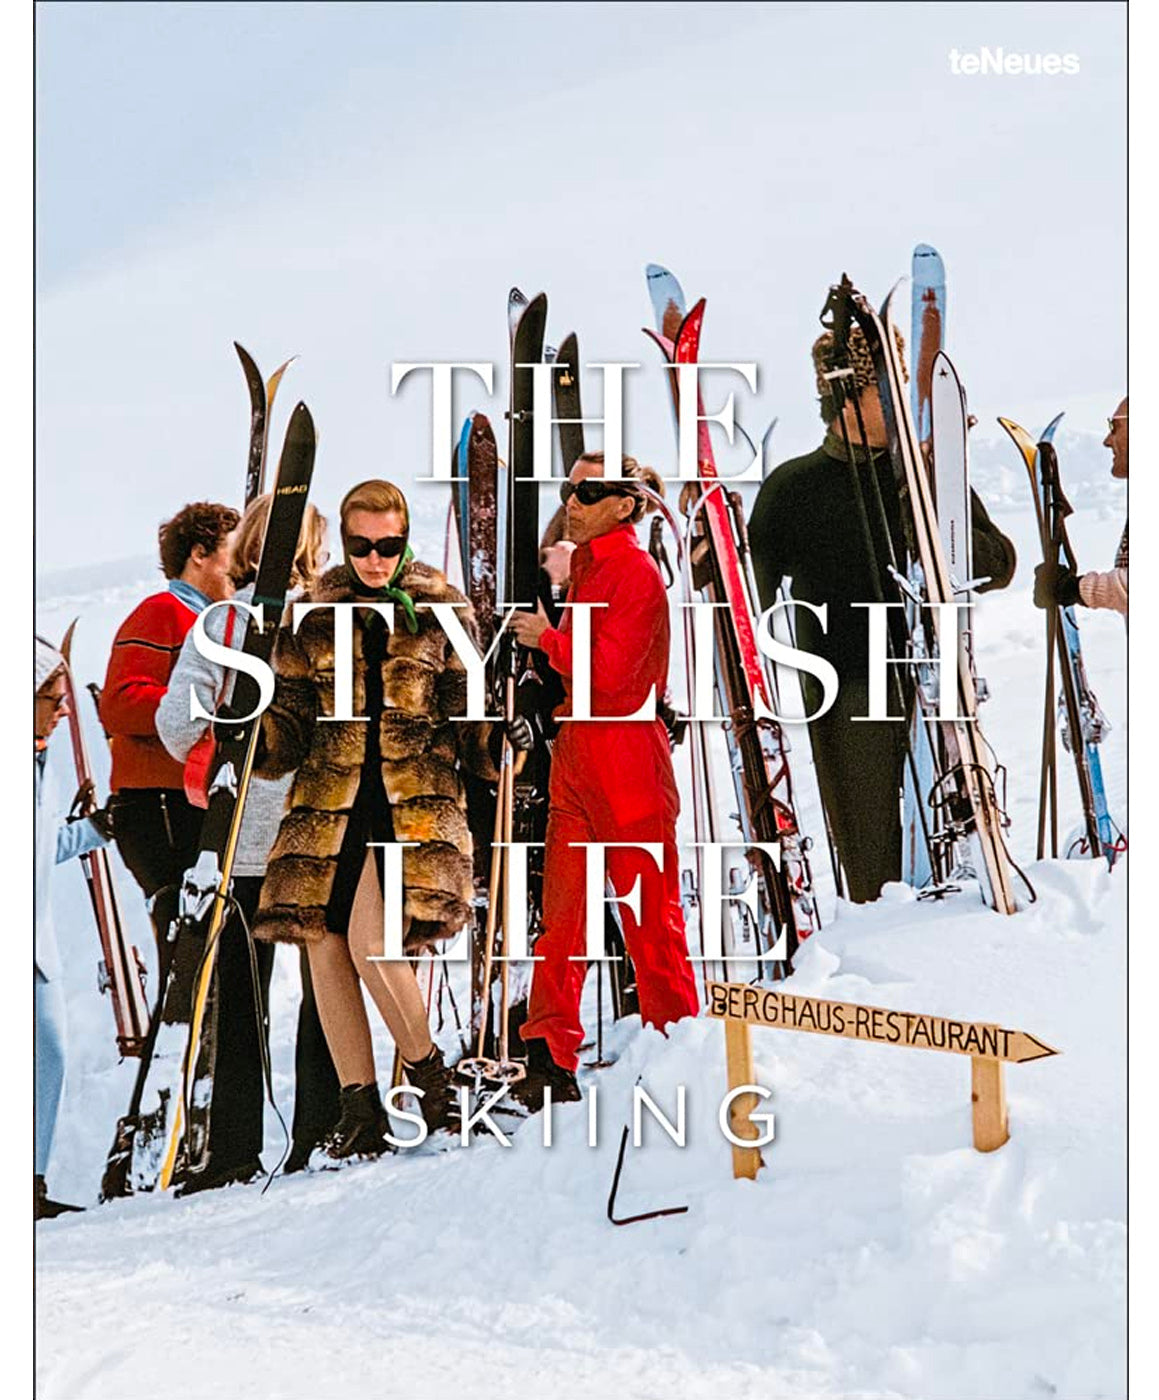 The Stylish Life: Skiing